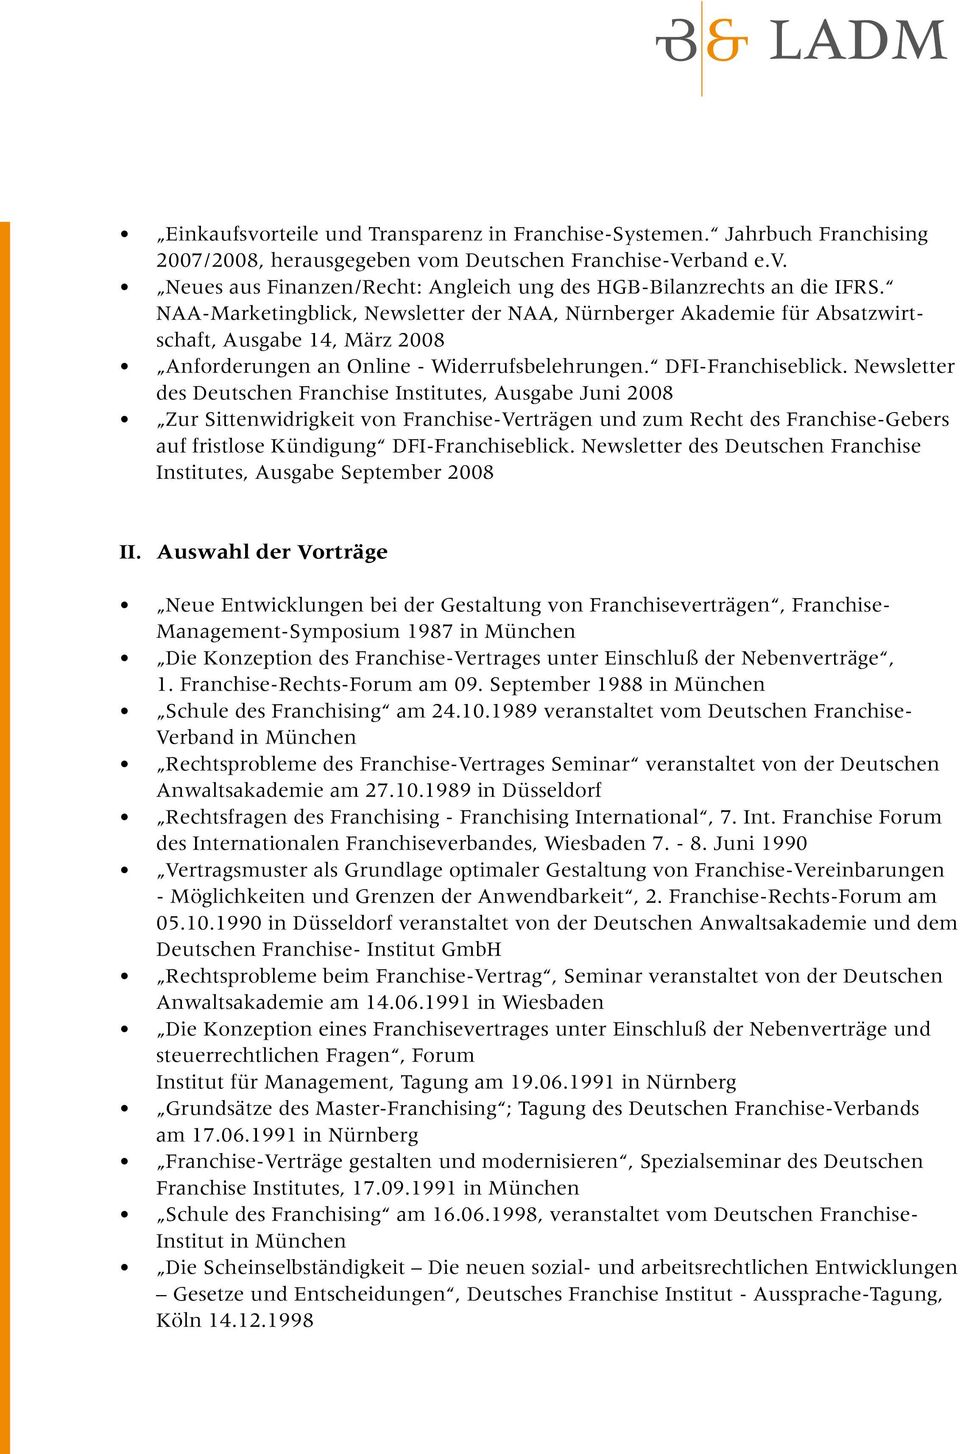 Newsletter des es, Ausgabe Juni 2008 Zur Sittenwidrigkeit von Franchise-Verträgen und zum Recht des Franchise-Gebers auf fristlose Kündigung DFI-Franchiseblick.